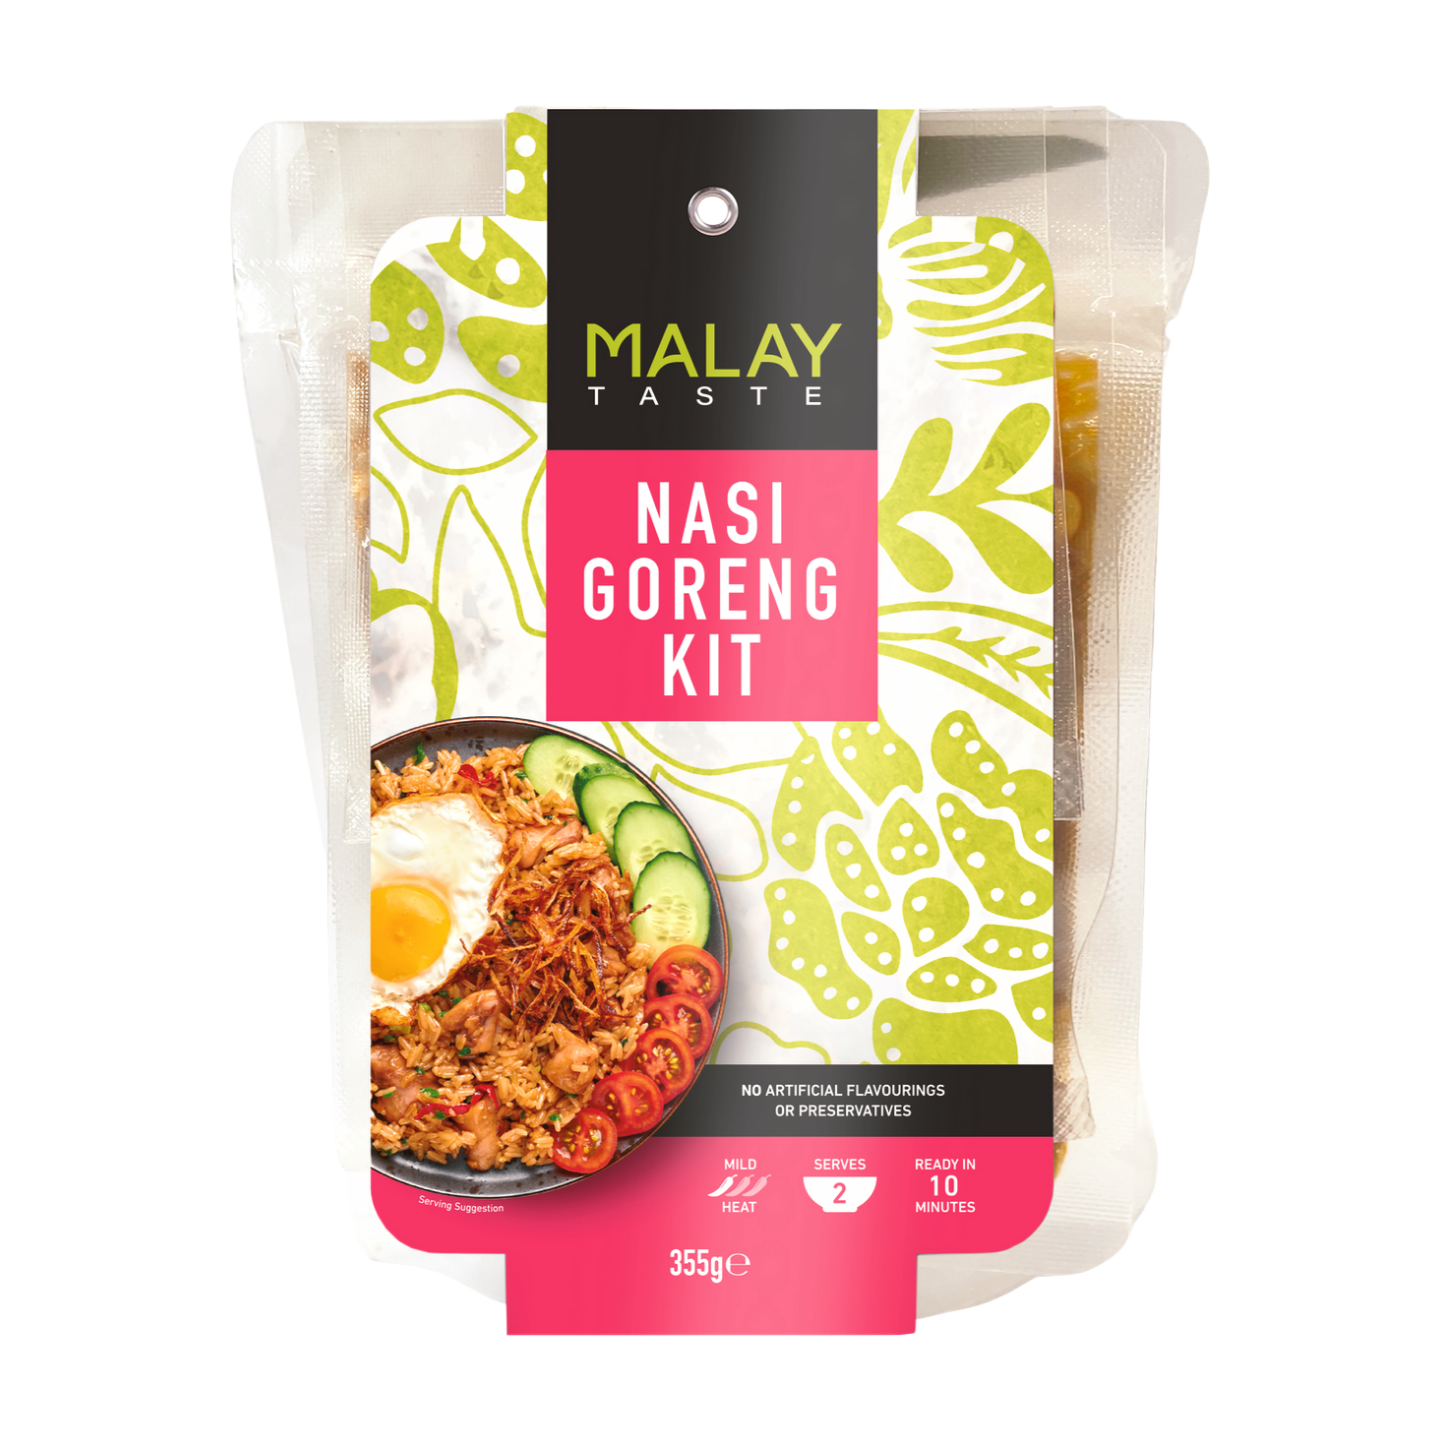 Malay Taste Nasi Goreng Kit (6x355g)